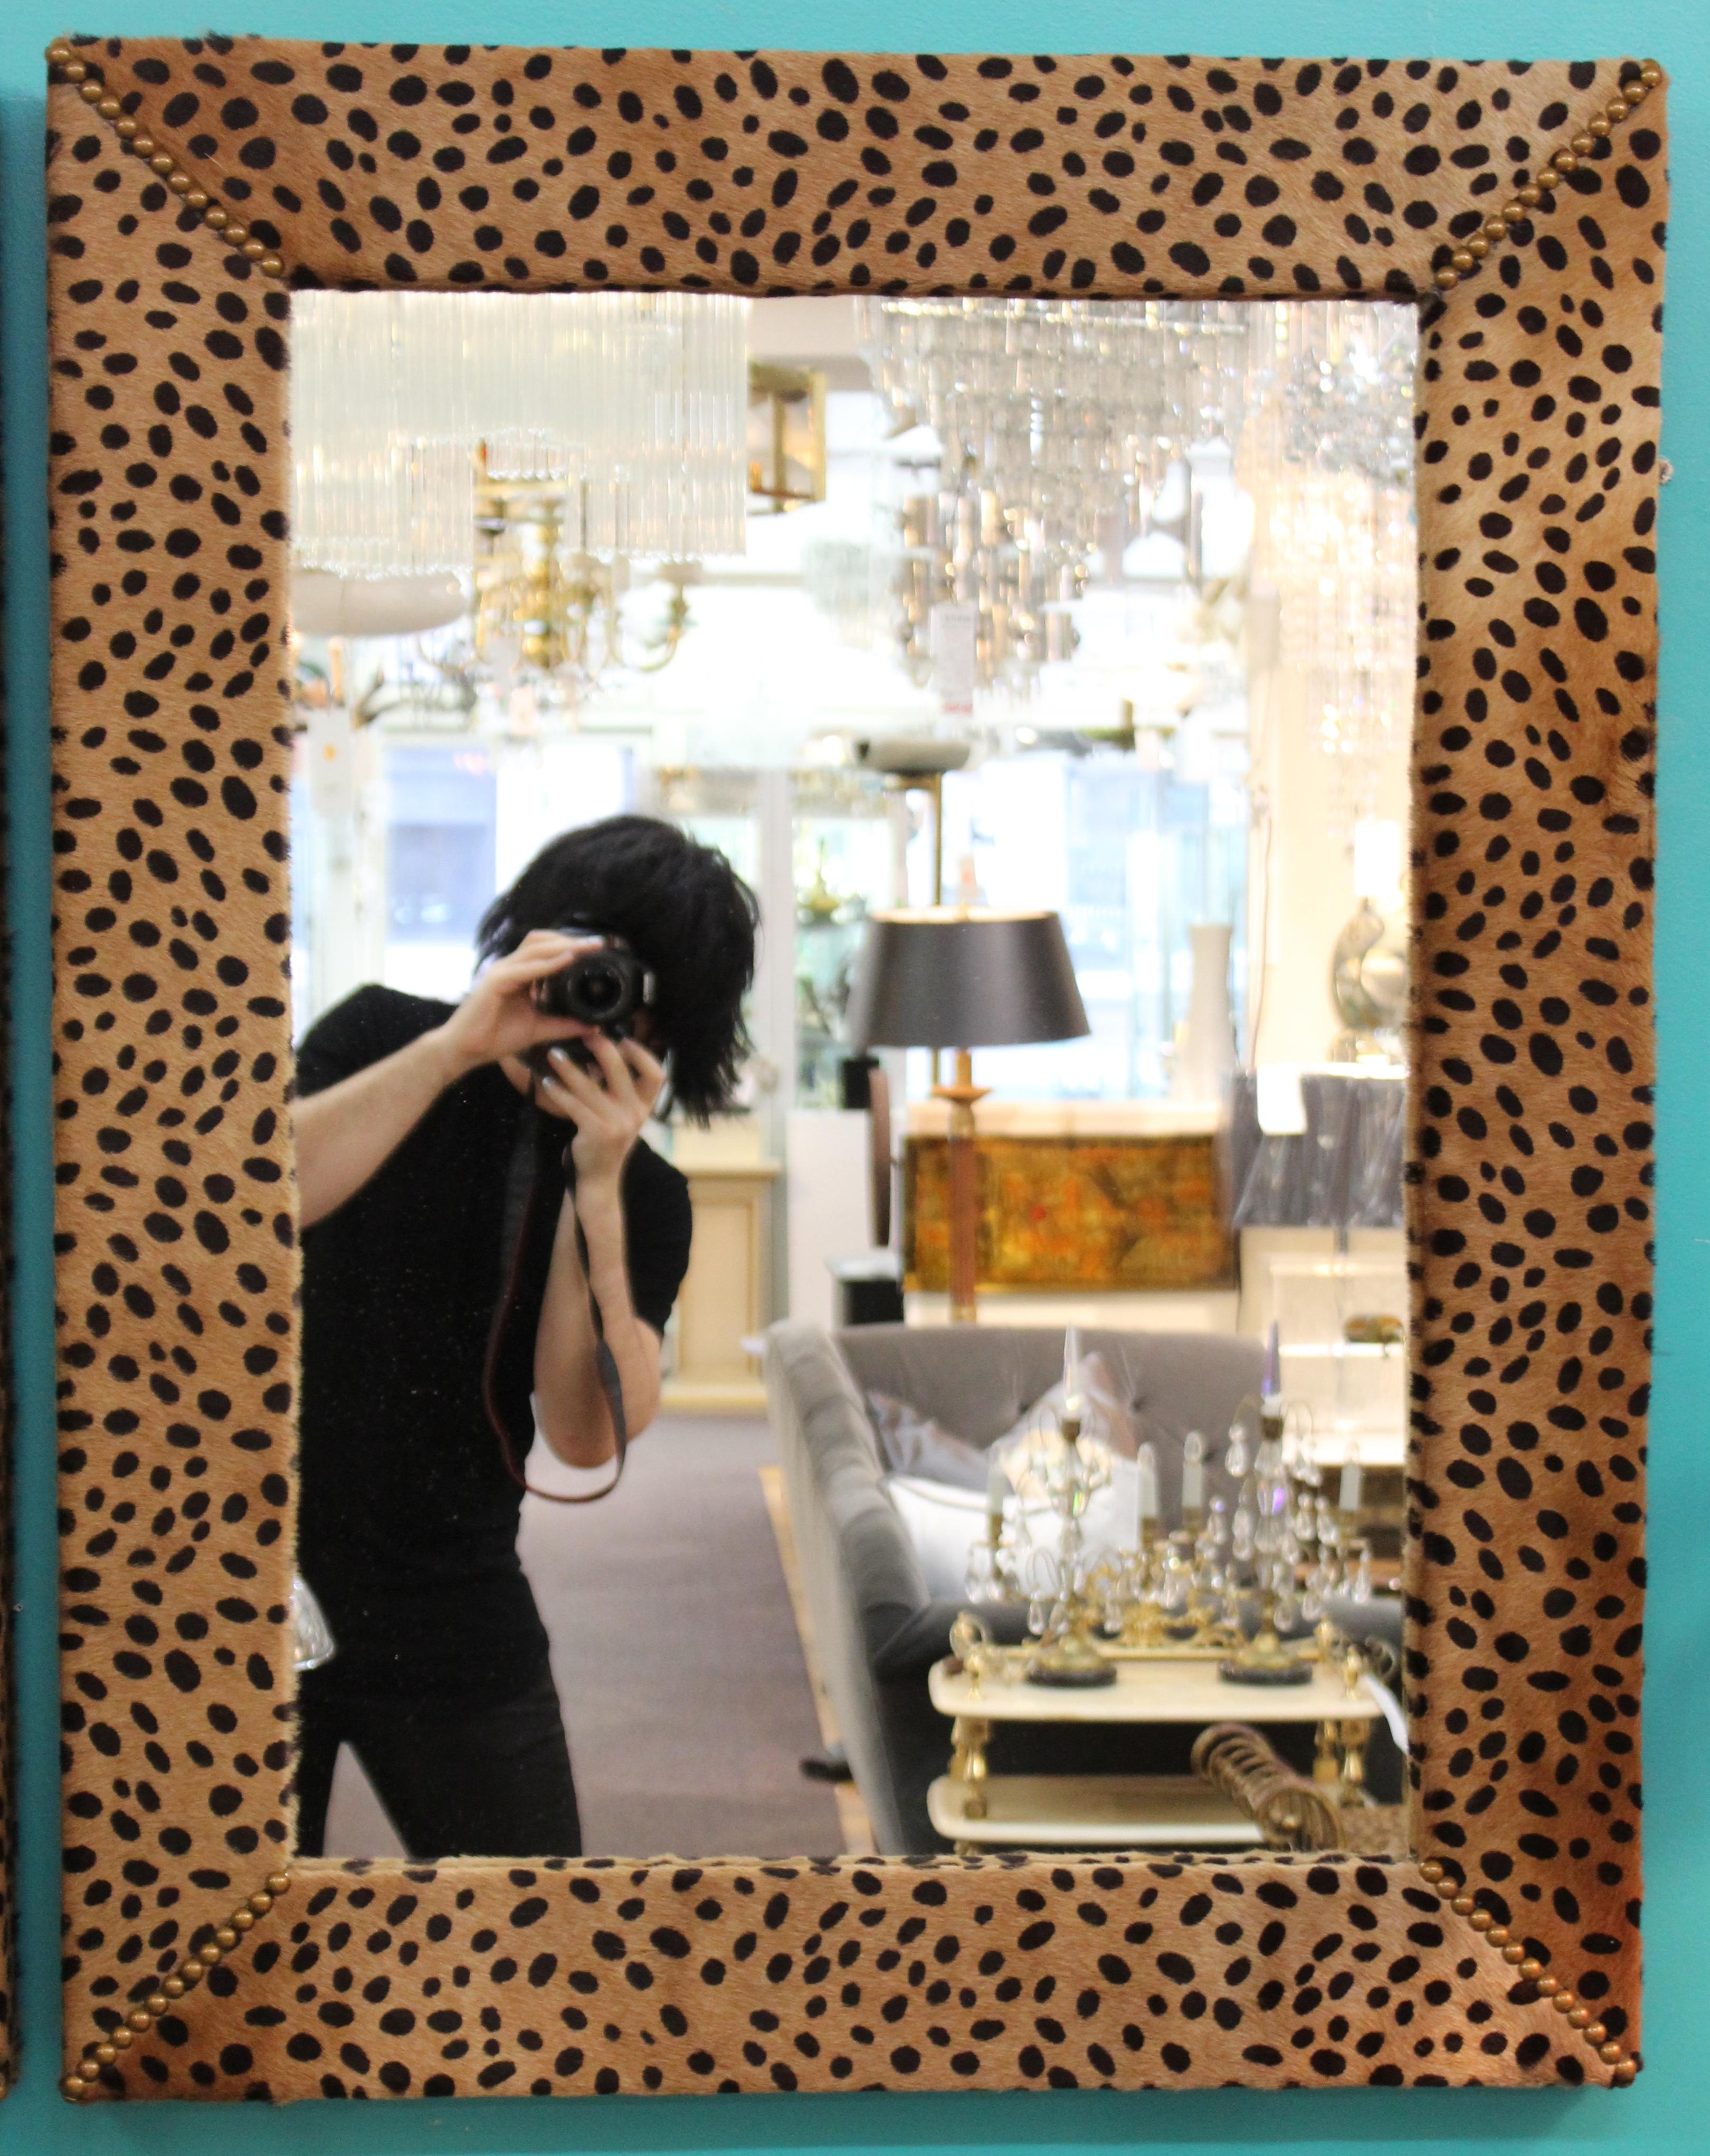 cheetah print mirror